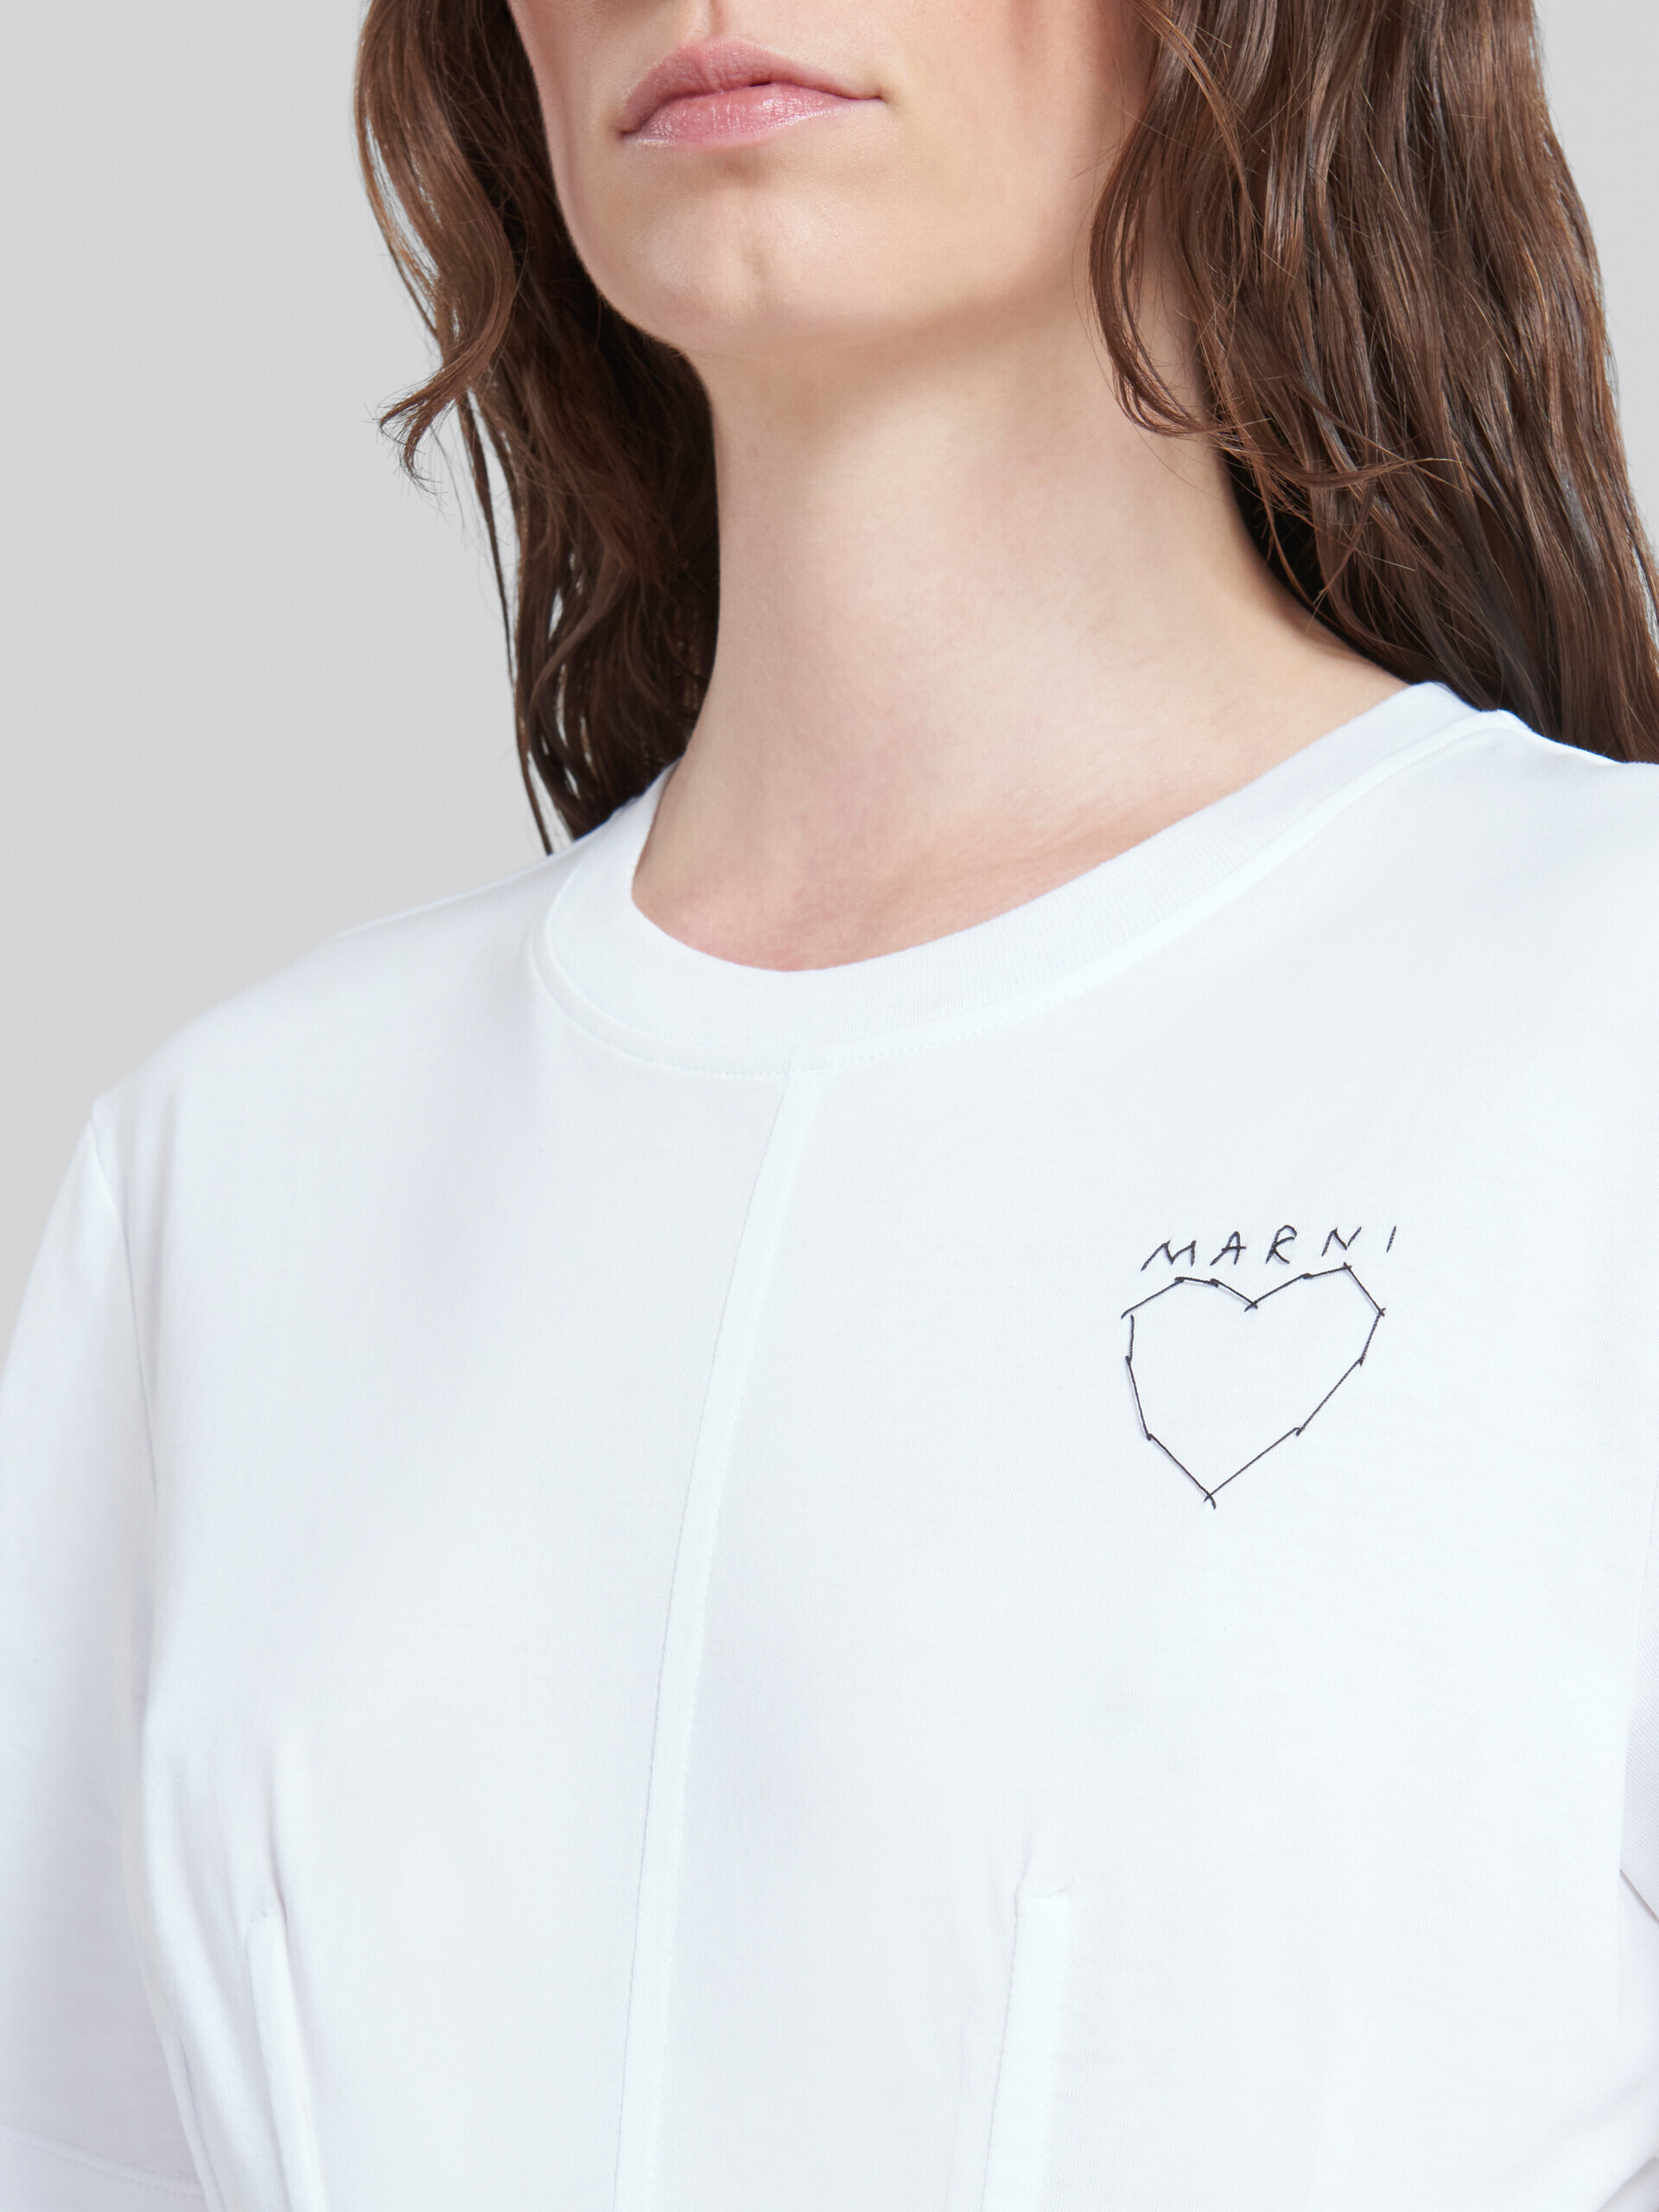 Camiseta bustier de algodón orgánico blanca - Camisetas - Image 4